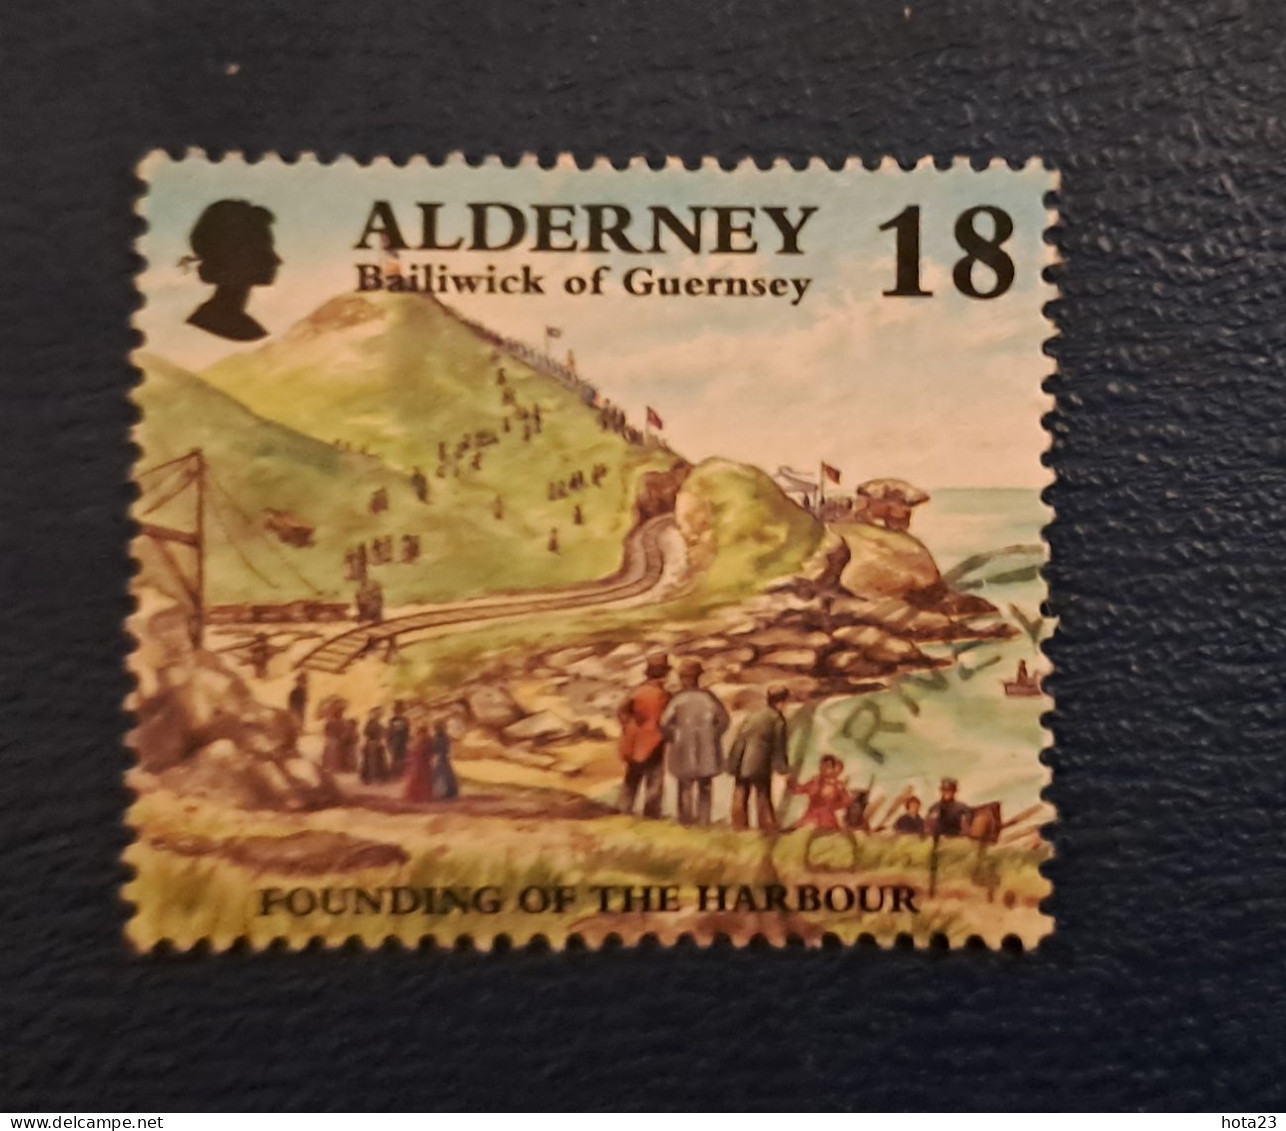 ALDERNEY - 1997 Garrison Island 18p Used - Alderney